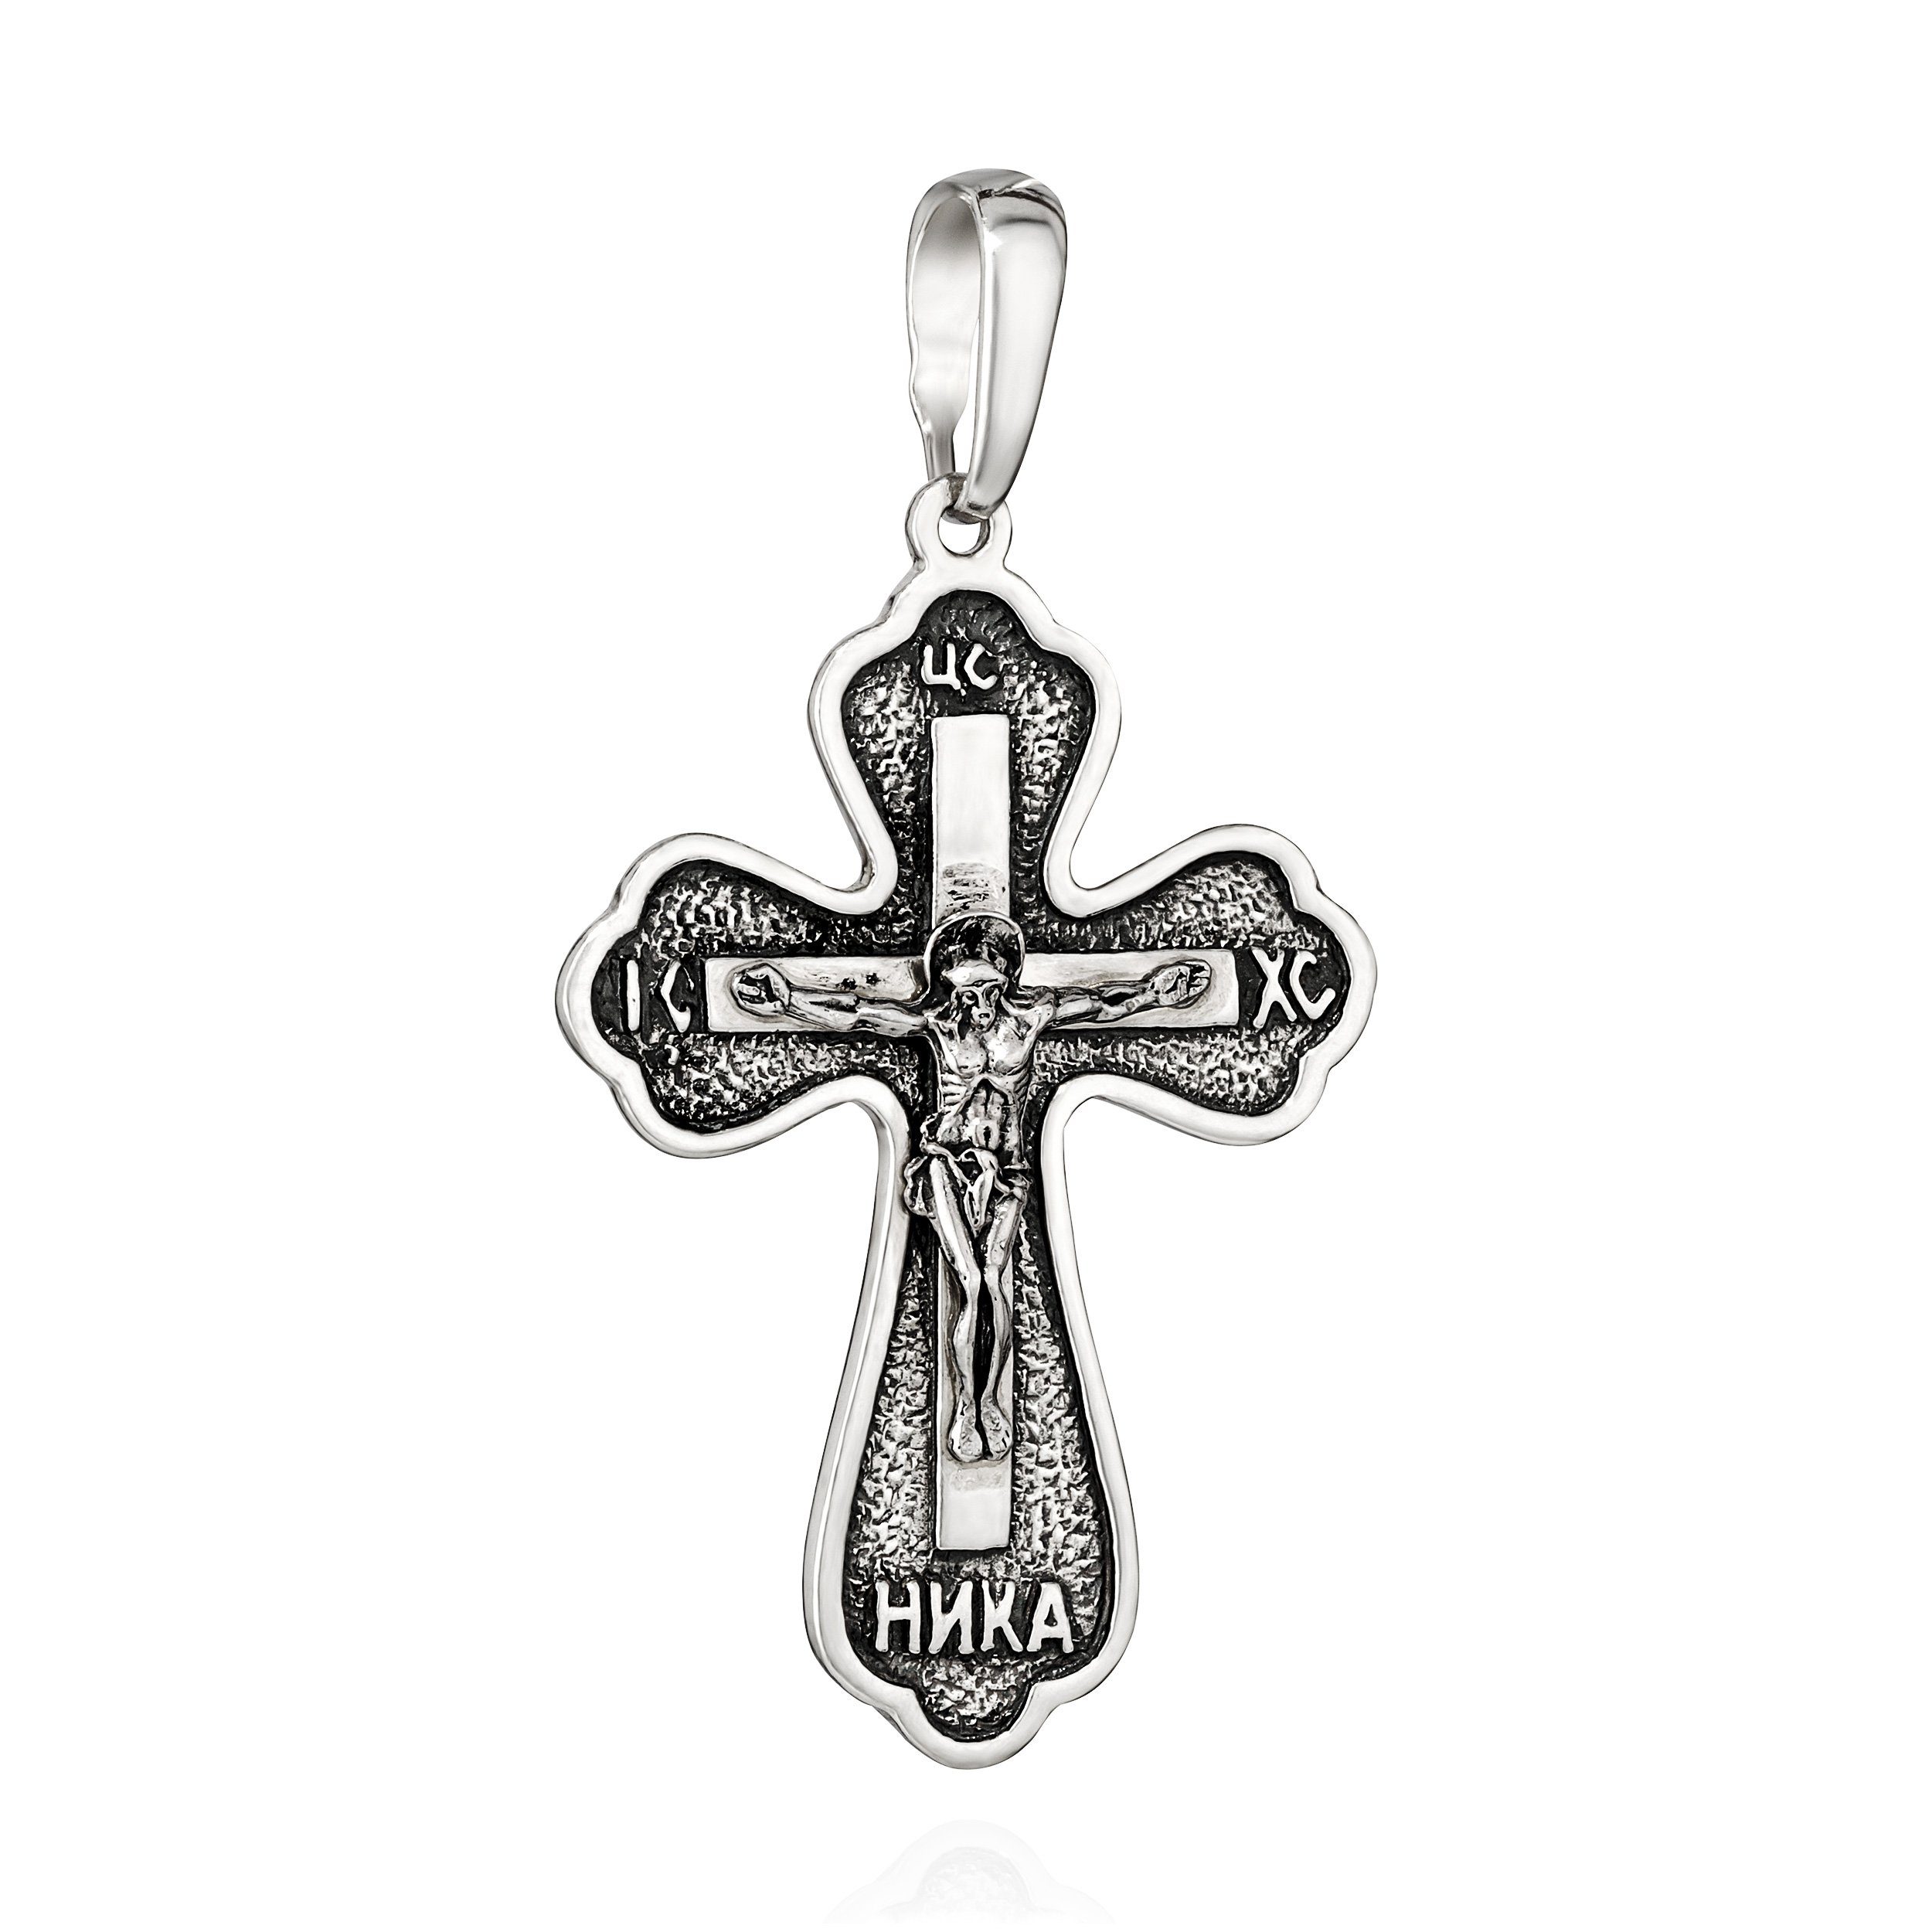 24mm x Kreuzanhänger Kettenanhänger Kruzifix Motiv 925 34mm Silber Christus Jesus NKlaus